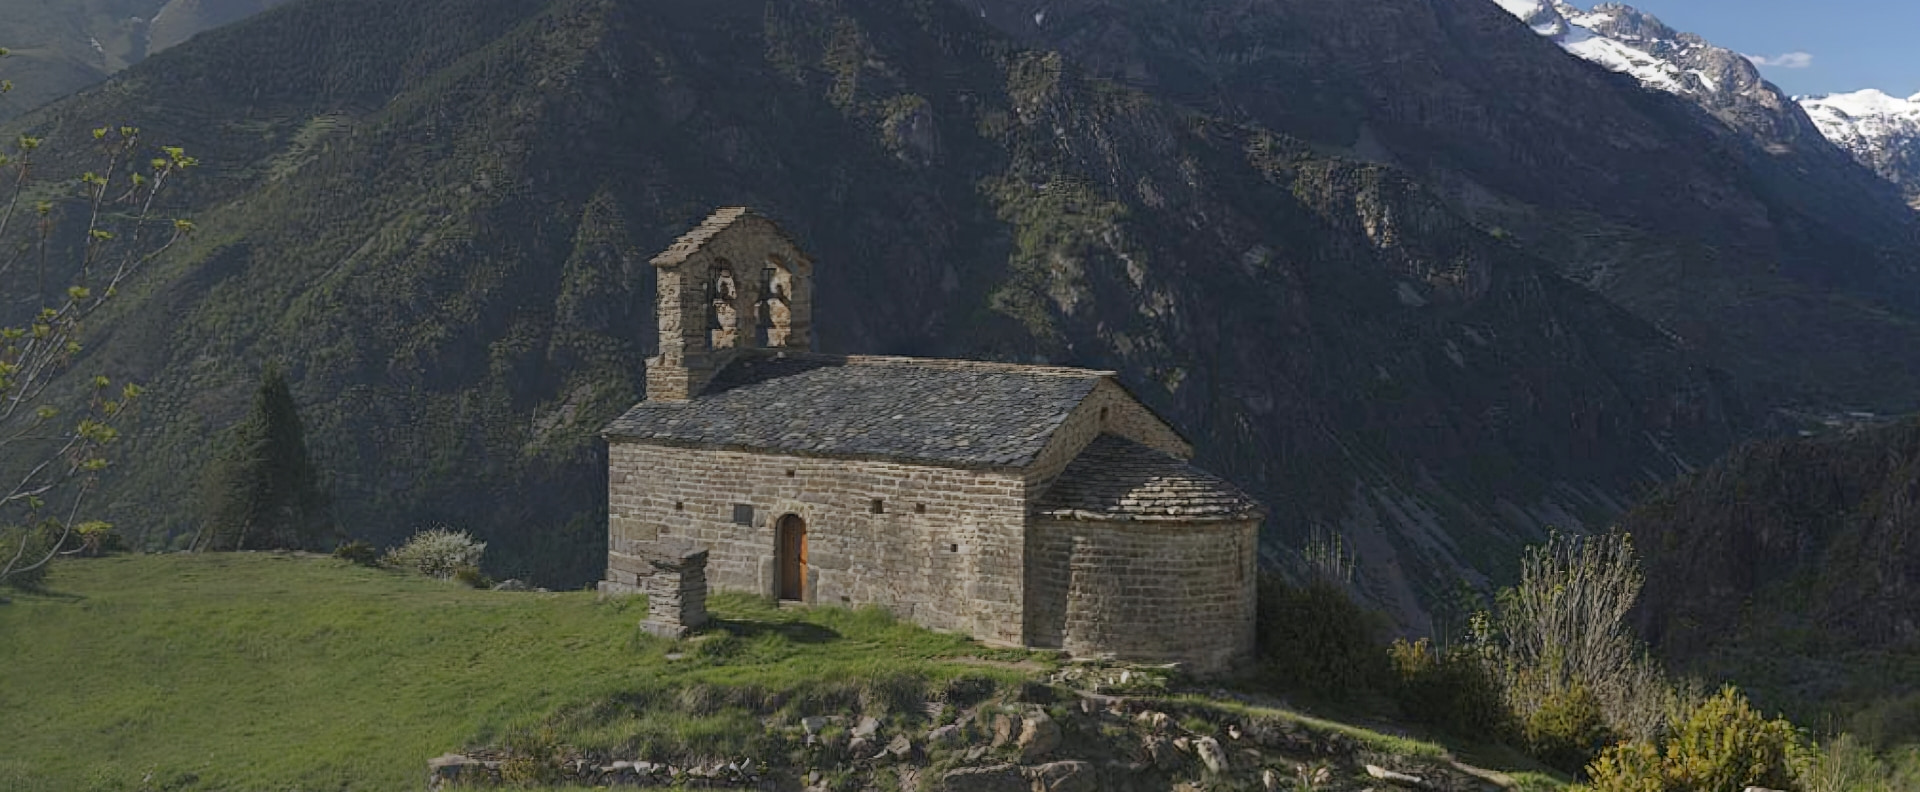 Esglèsia del romànic a la vall de boí situada al cim d'una muntanya